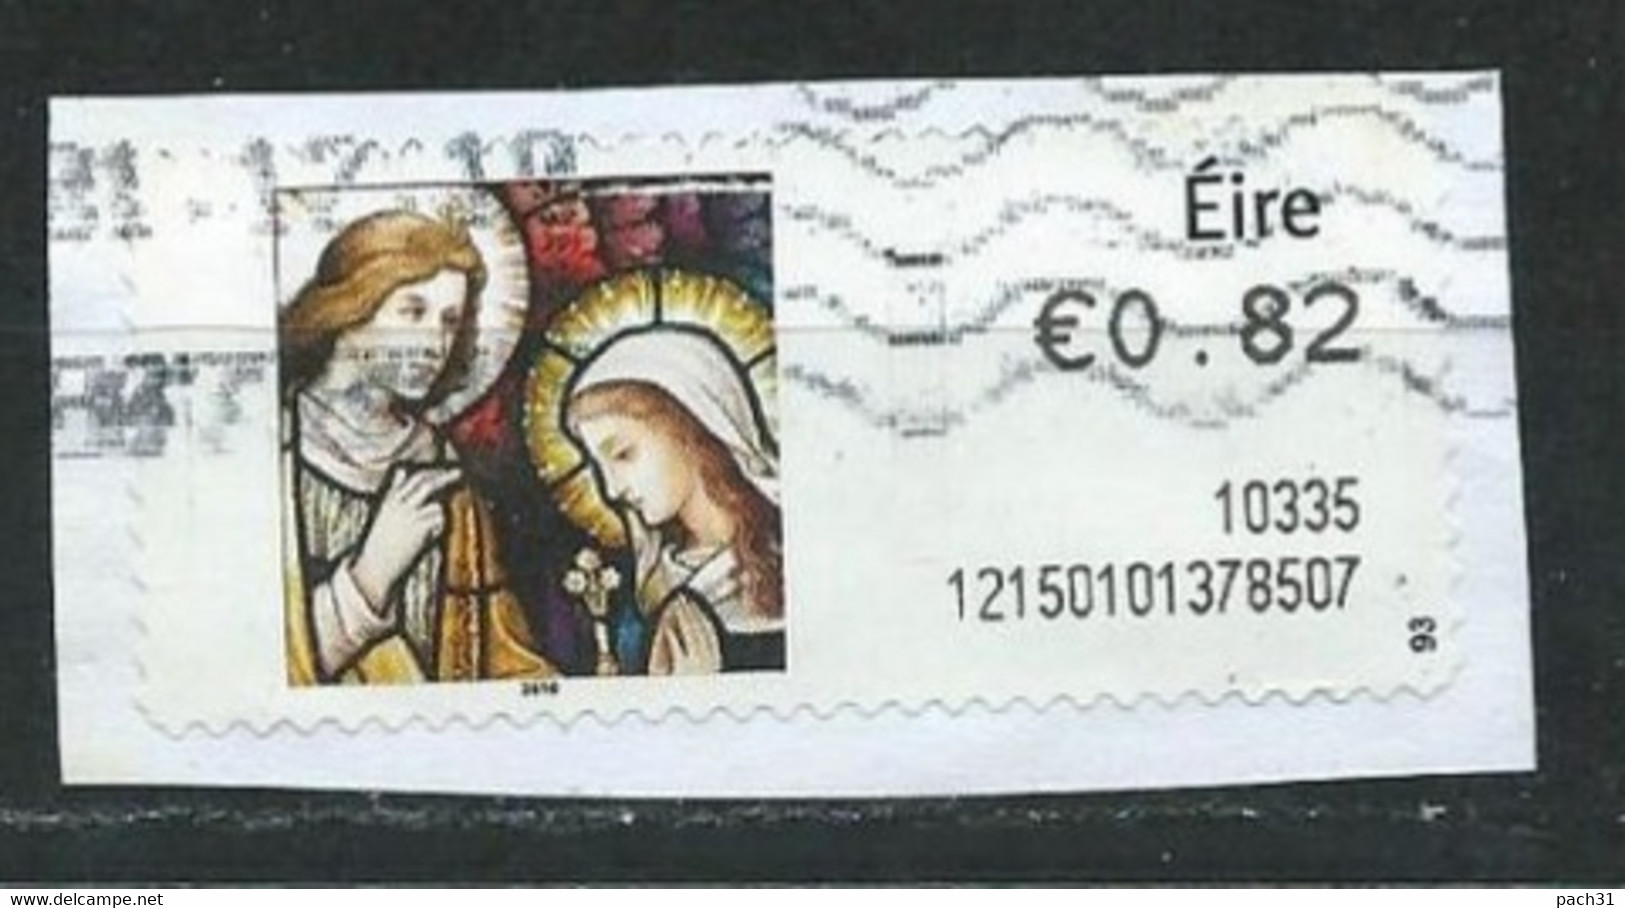 Irlande Vignette D'affranchissement 0,82E 2010  Religion - Franking Labels